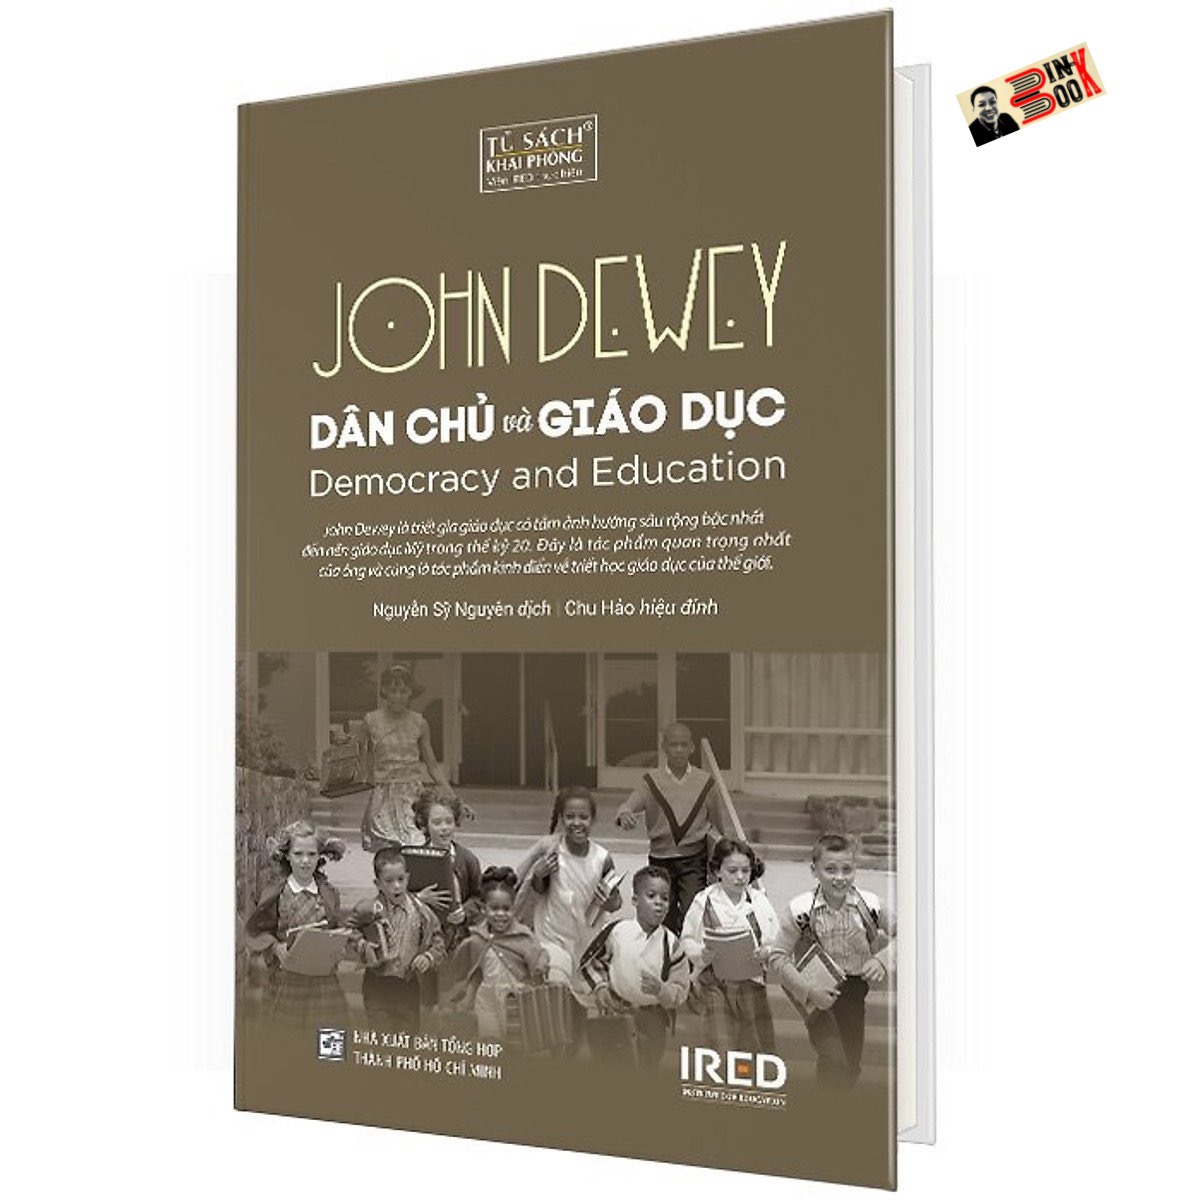 [Bìa cứng] DÂN CHỦ VÀ GIÁO DỤC - John Dewey - Nguyễn Sỹ Nguyên dịch – Viện Ired - Nxb tổng hợp HCM